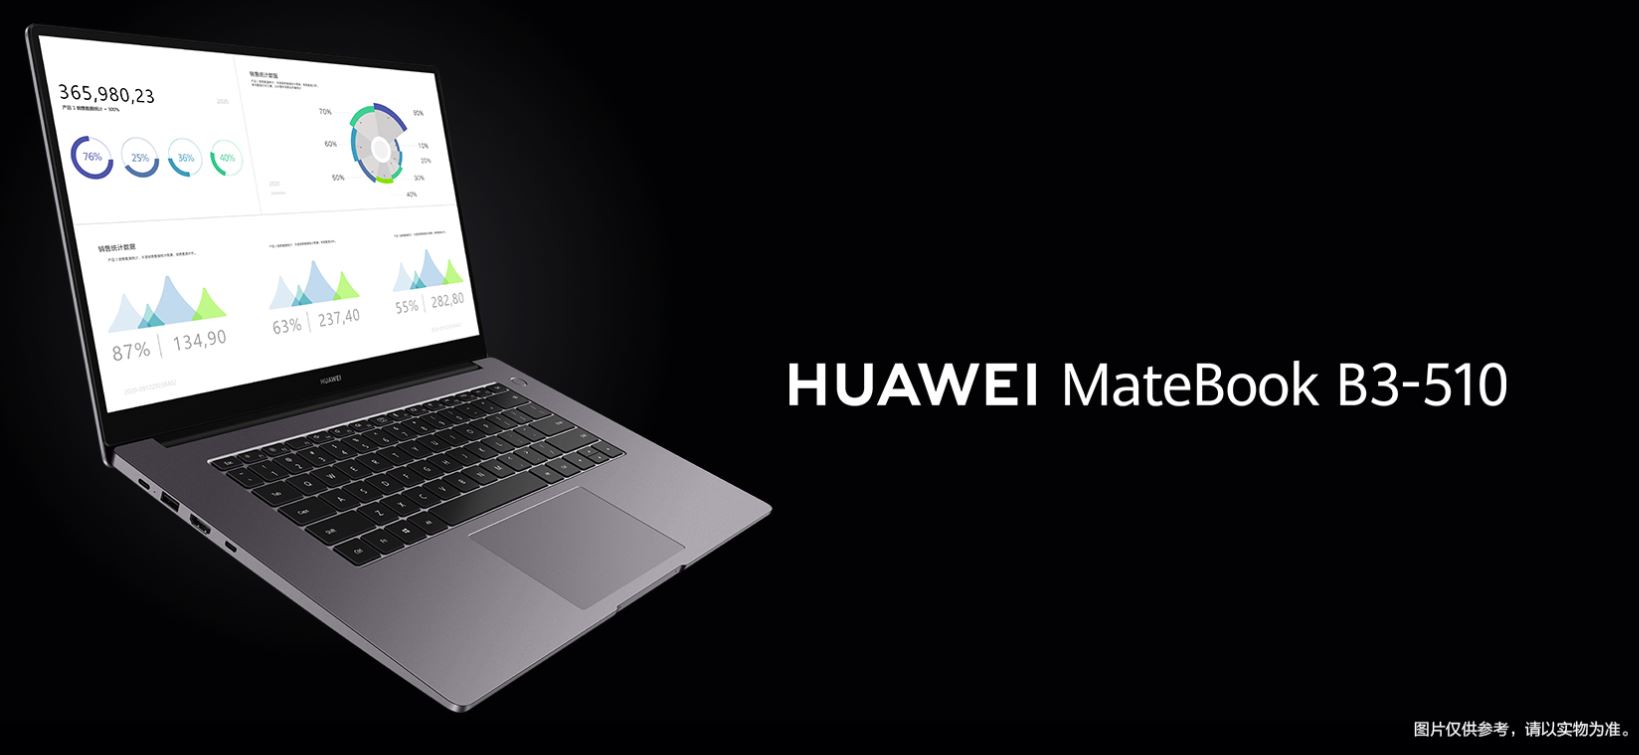 Üzleti felhasználásra jön a Huawei Matebook B-sorozat